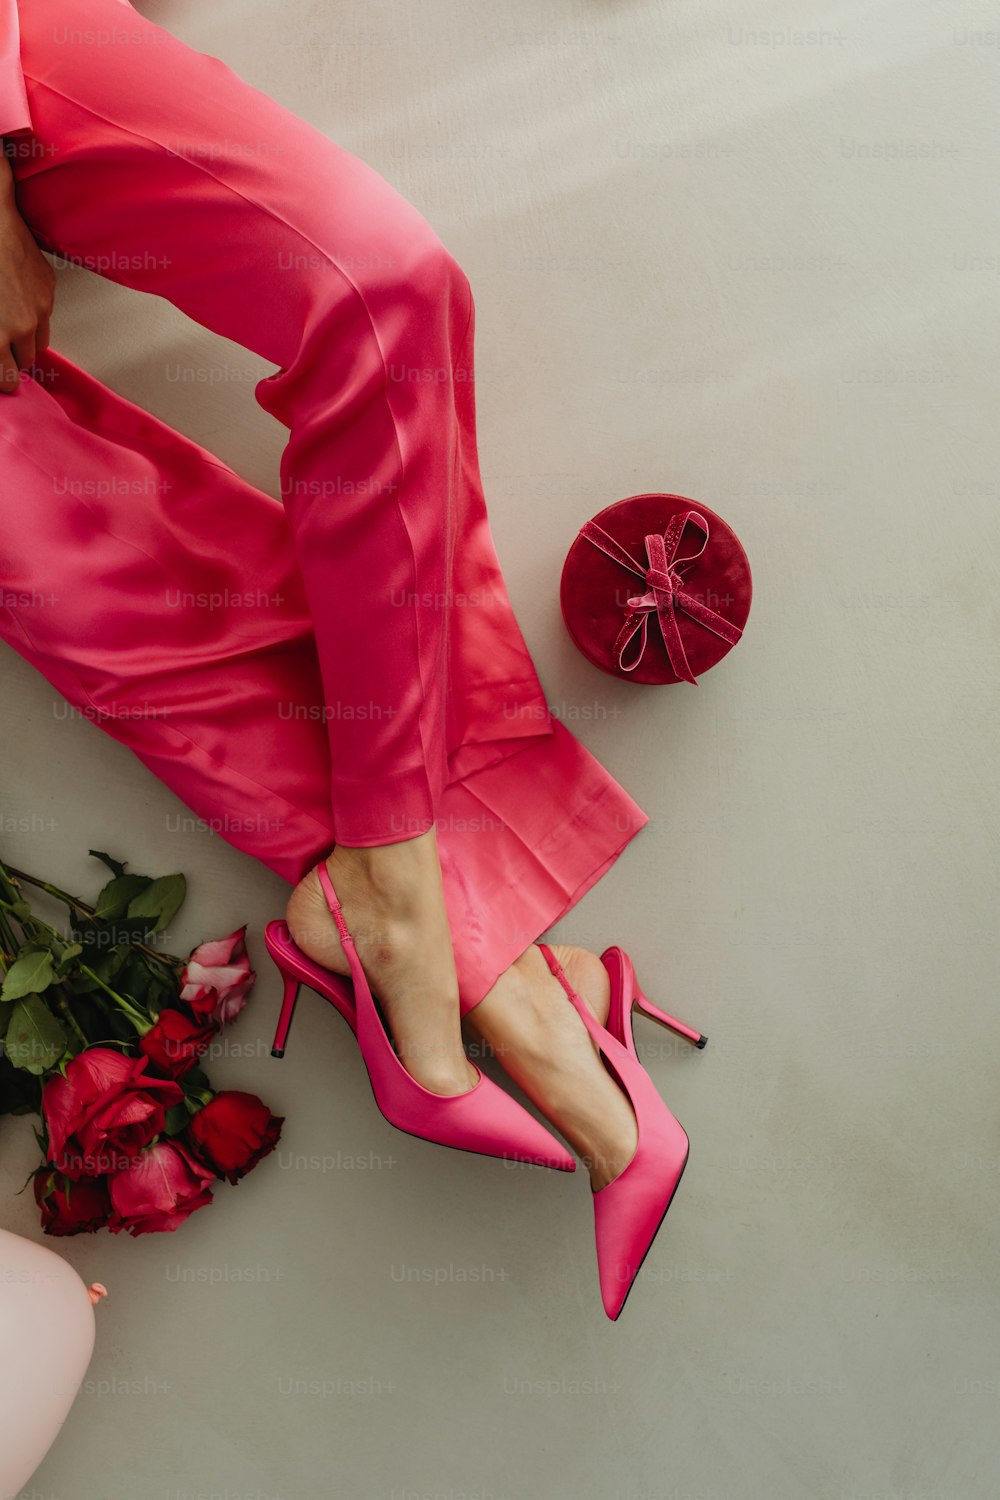 バラの花束の隣にピンクの靴を履いた女性の足